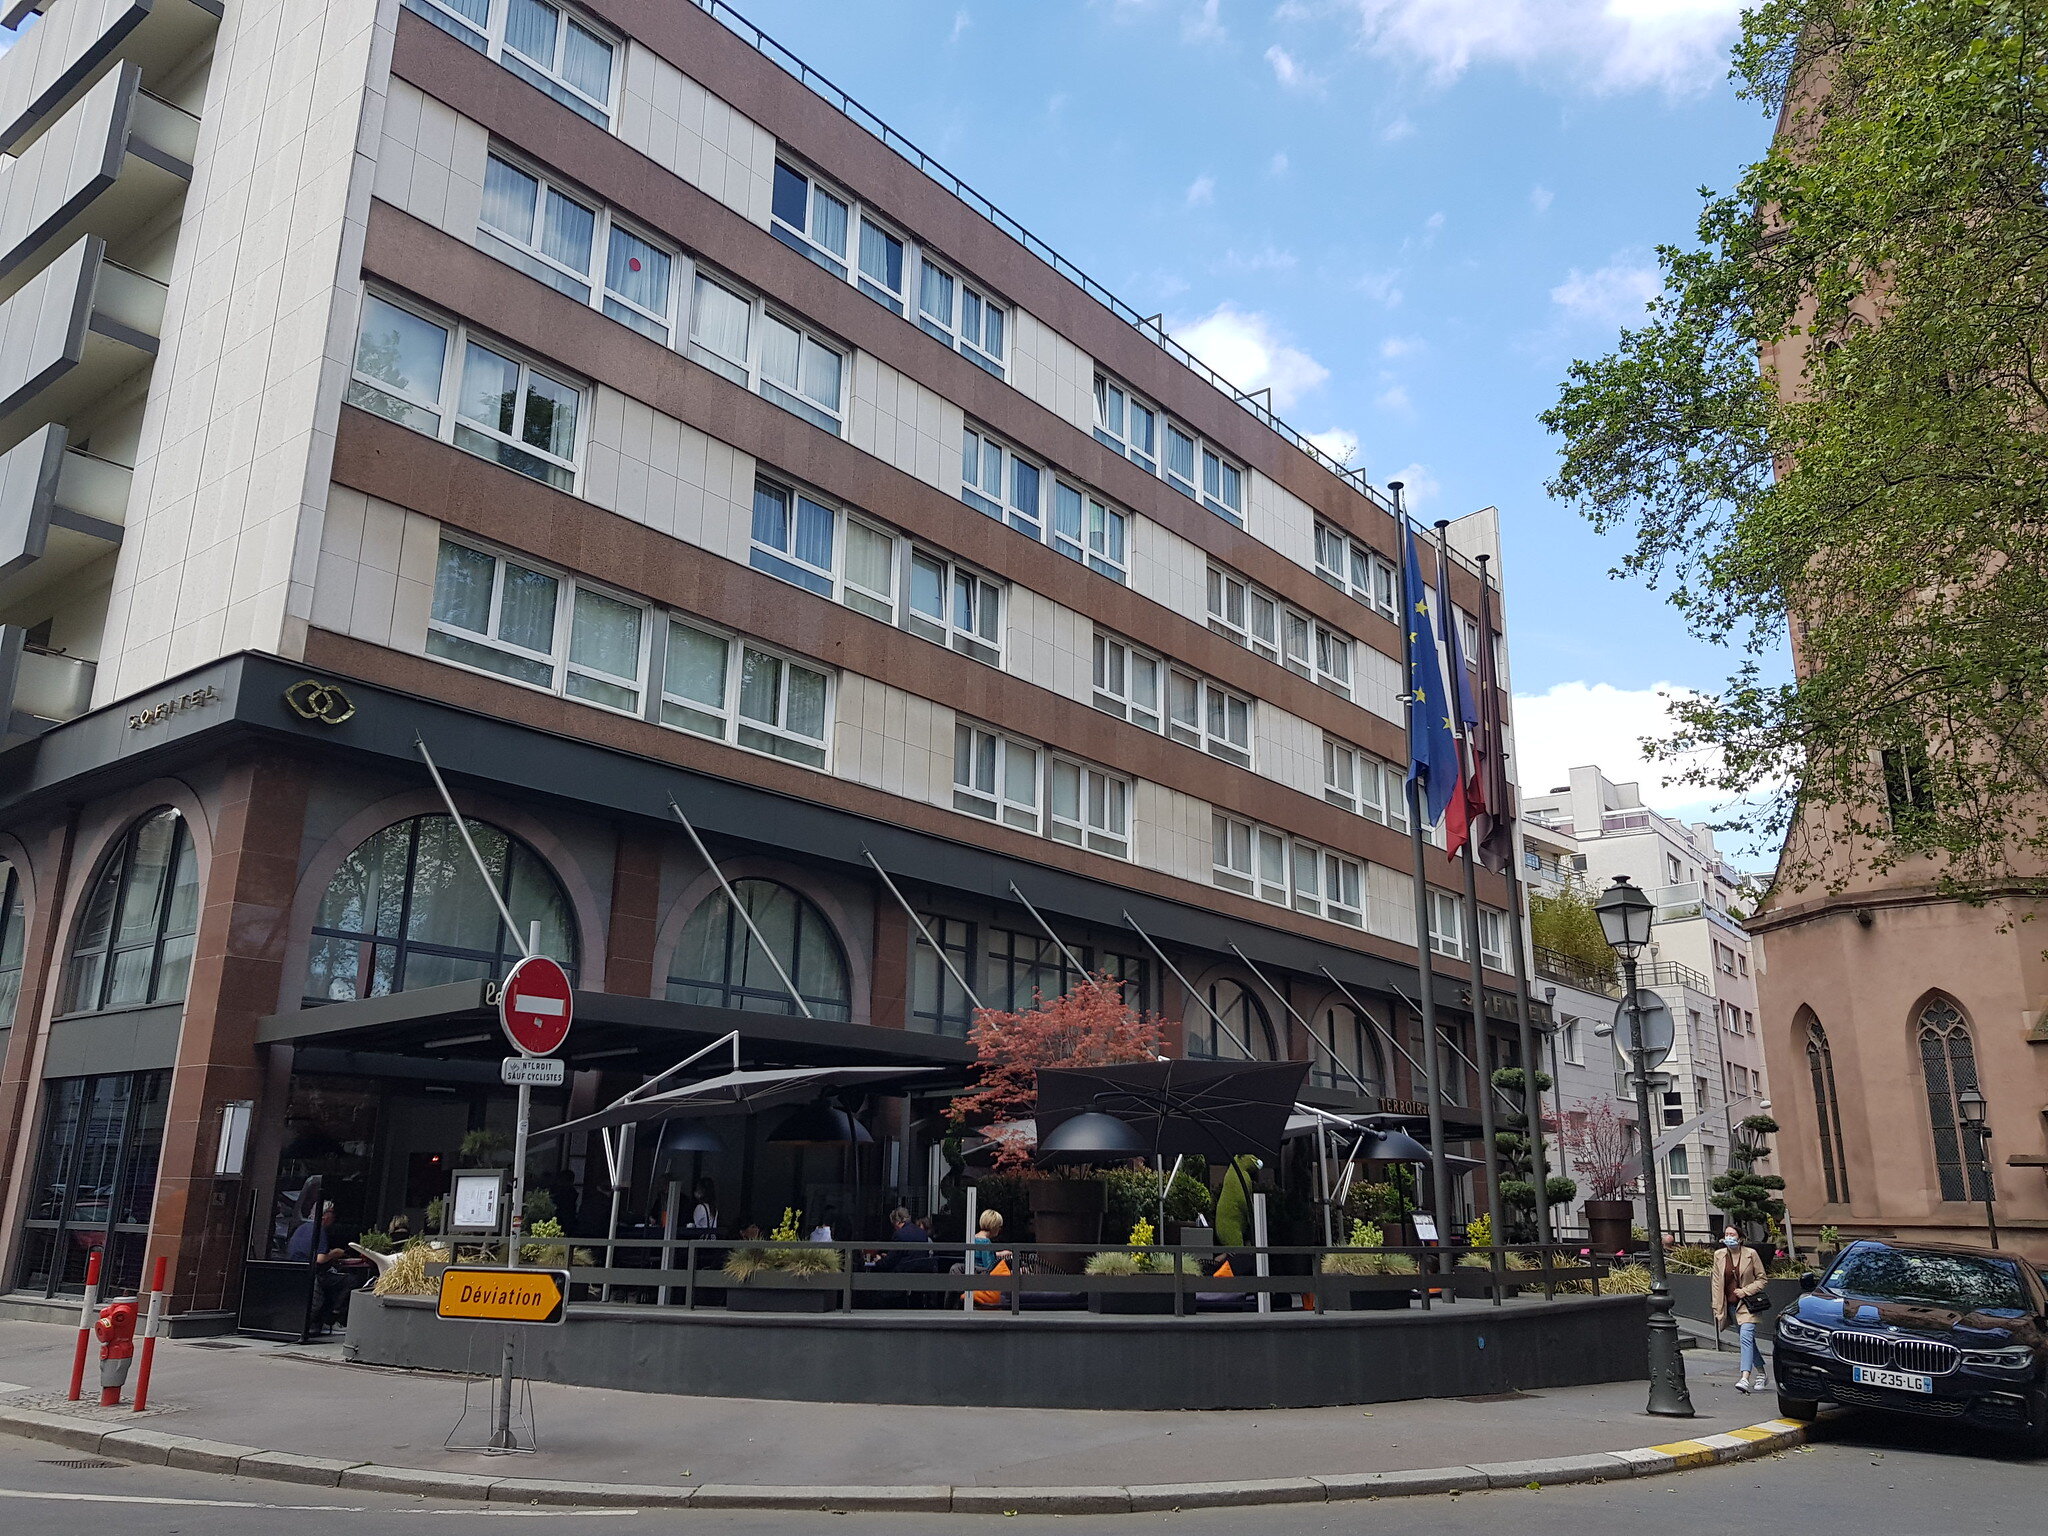 À vendre : hôtel Sofitel 5 étoiles, dans quartier historique de Strasbourg, discrétion demandée